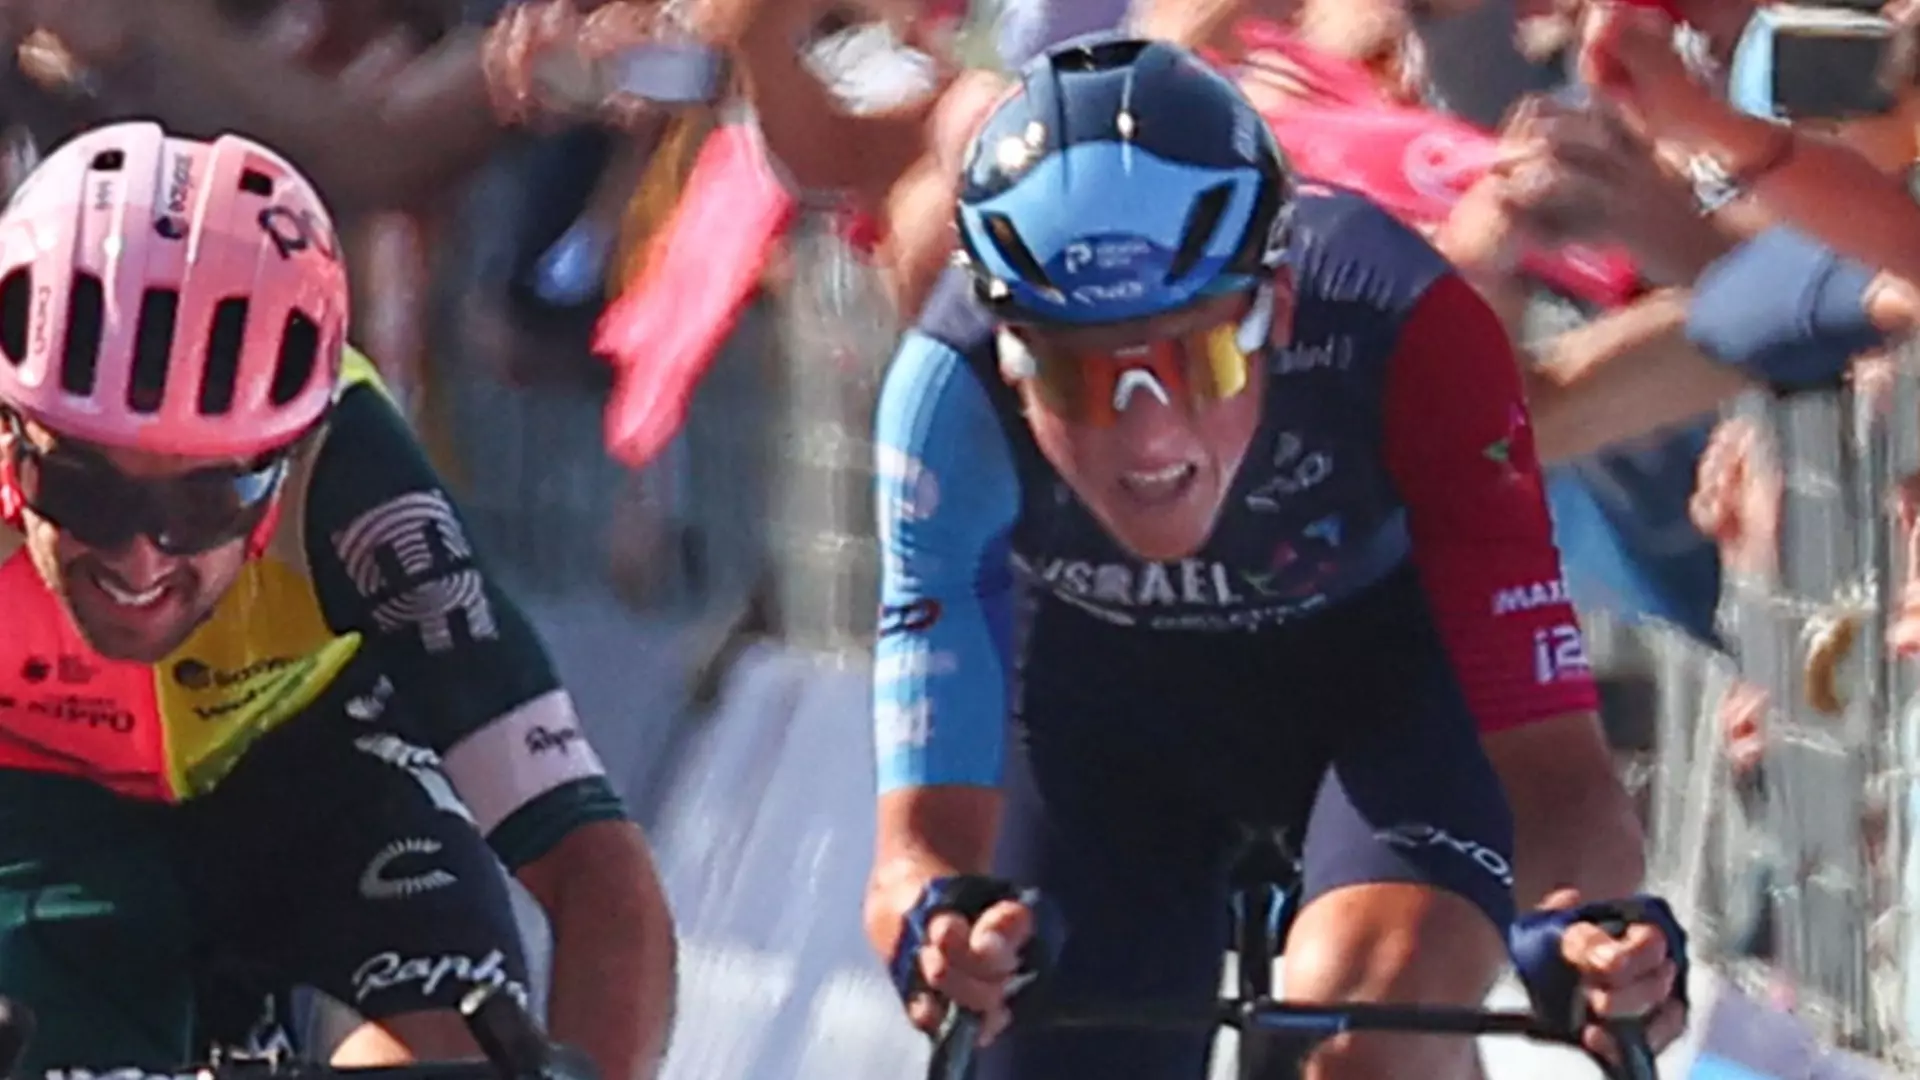 Giro d’Italia, Marco Frigo vede il bicchiere mezzo pieno